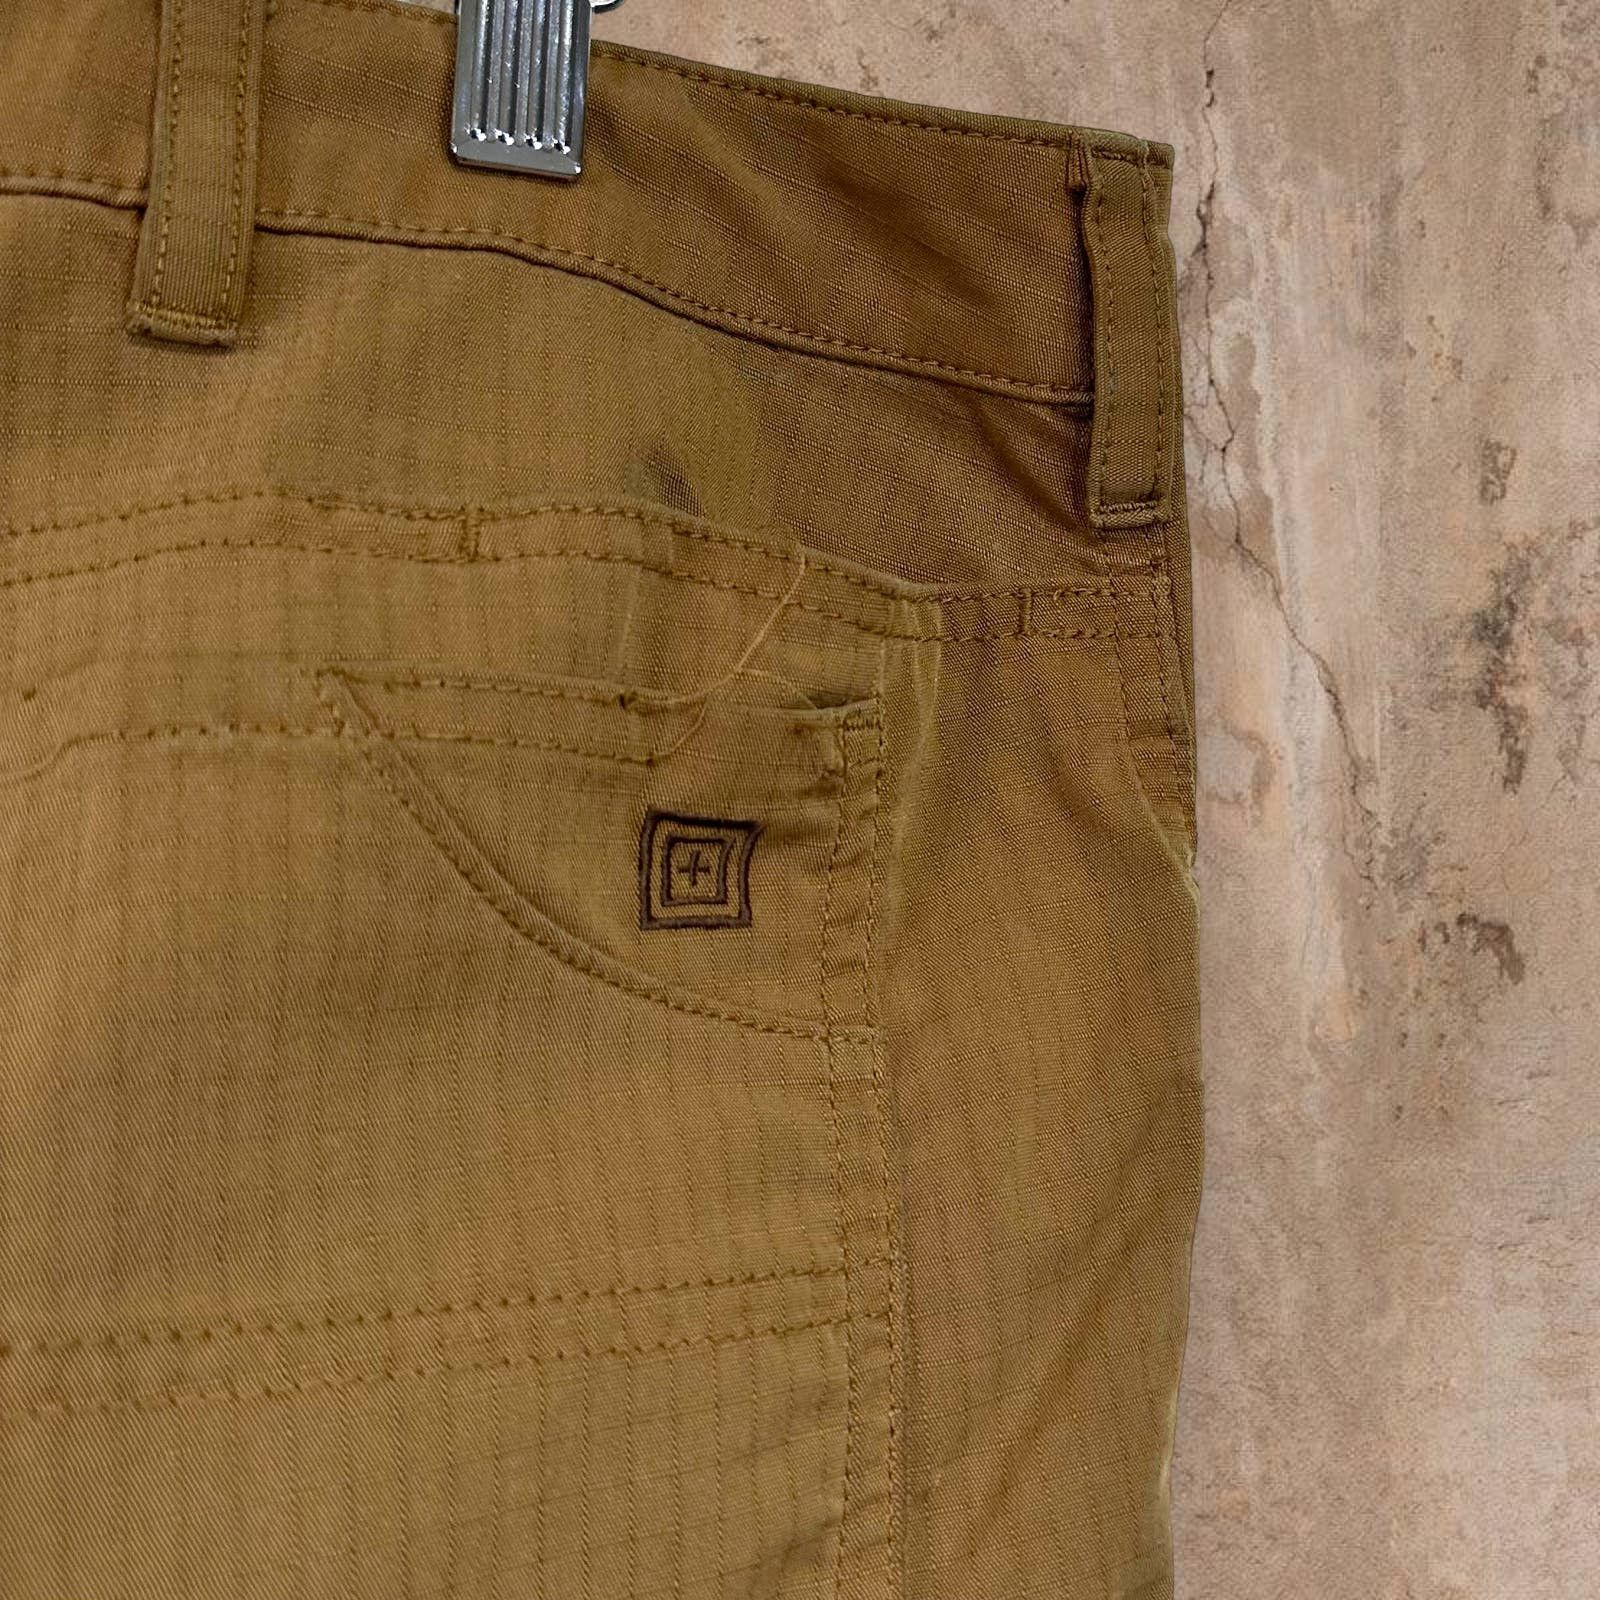 Vintage Vintage 5.11 Tactical Pants Tan Baggy Fit Cargos 90s Size US 36 / EU 52 - 5 Thumbnail